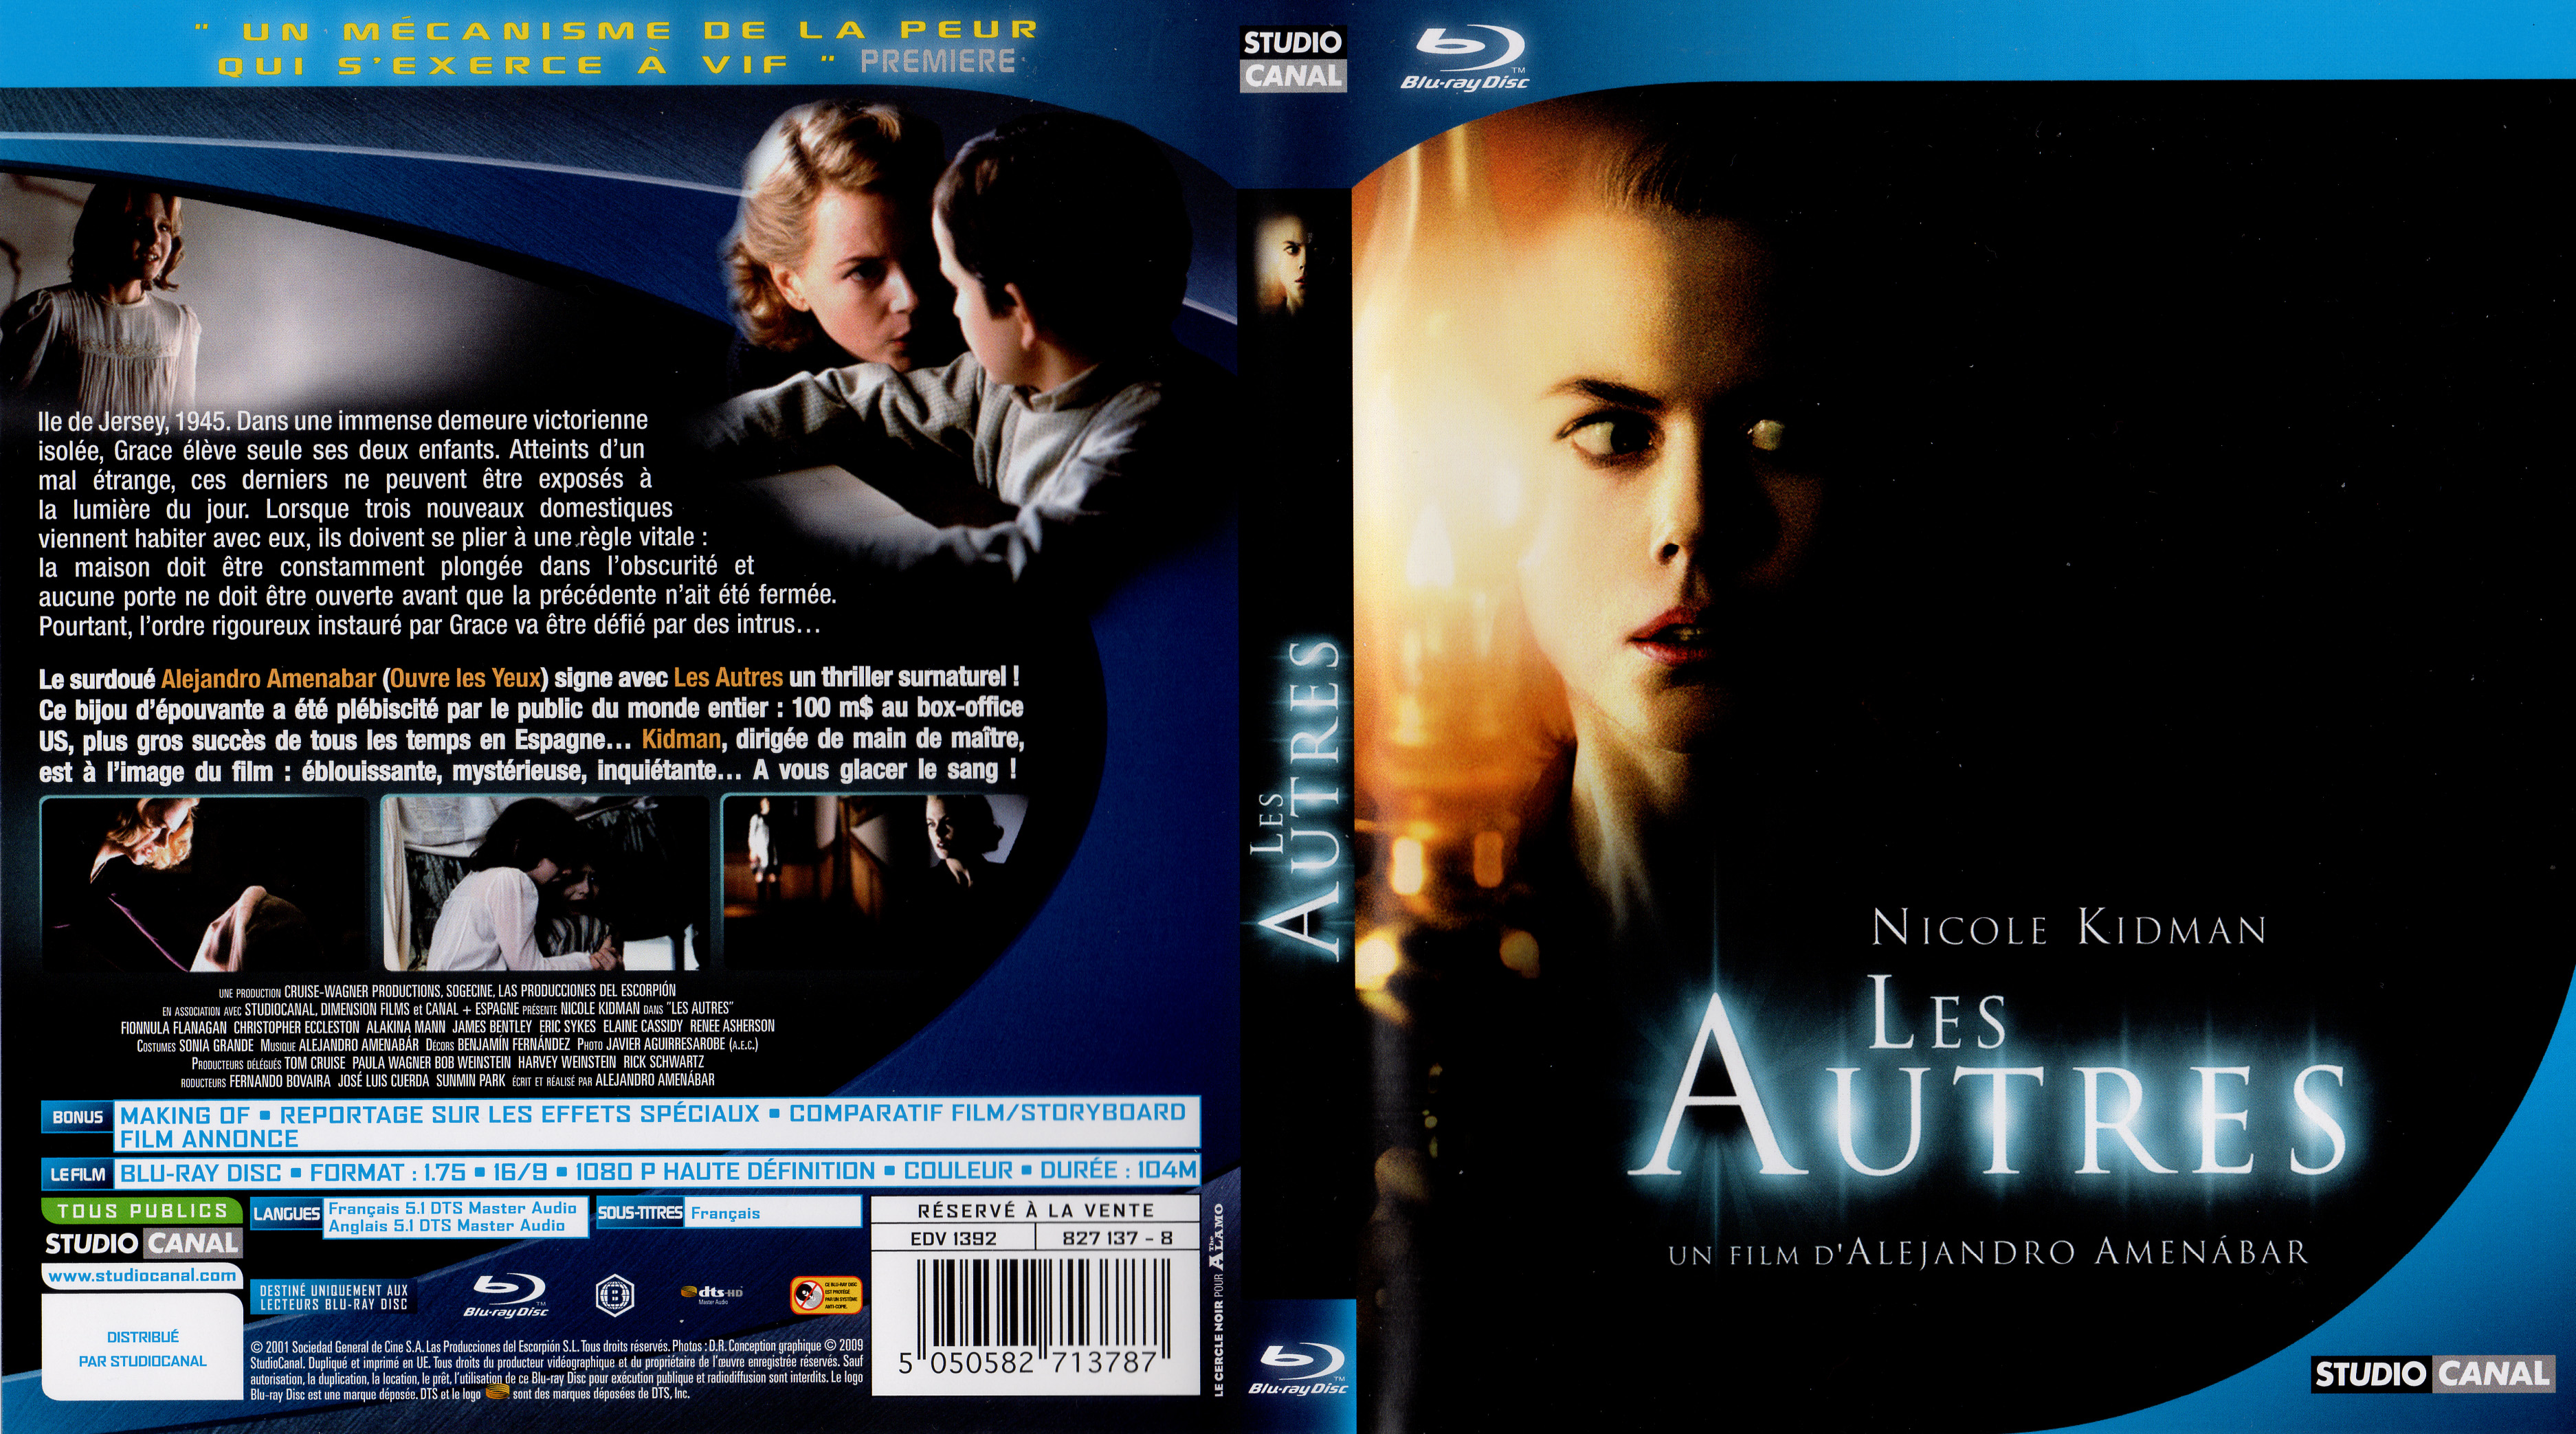 Jaquette Dvd De Les Autres Blu Ray Cinéma Passion 